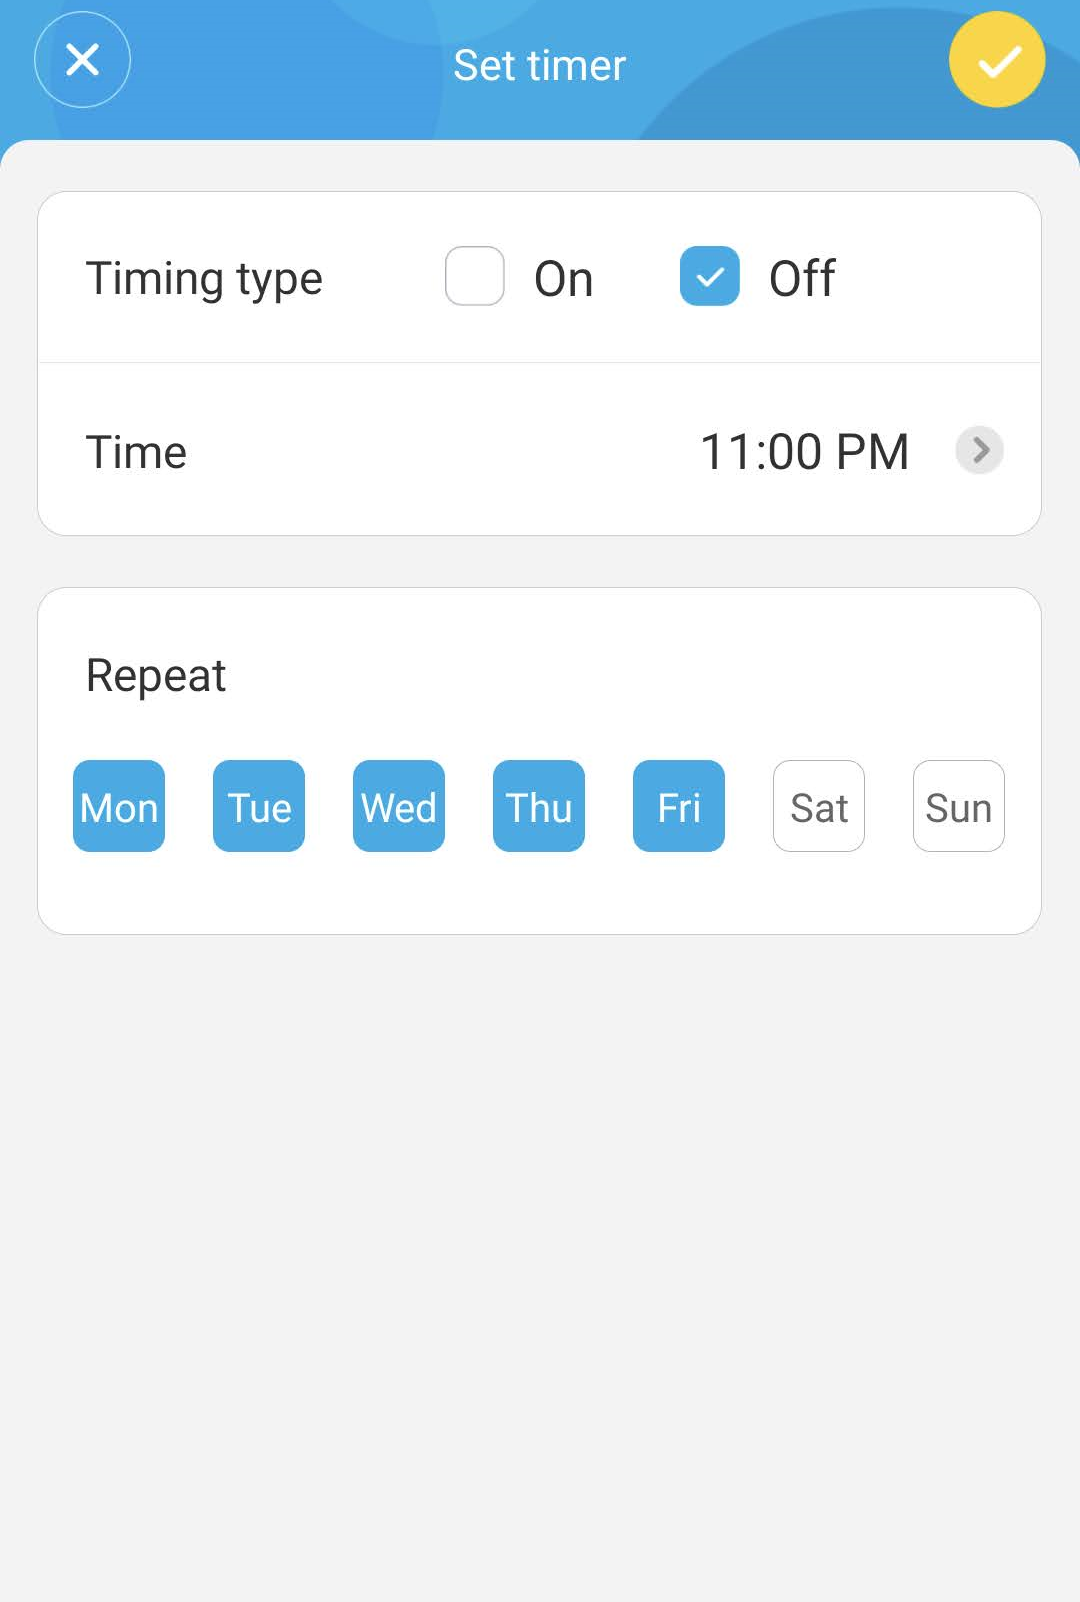 govee-app-scheduling